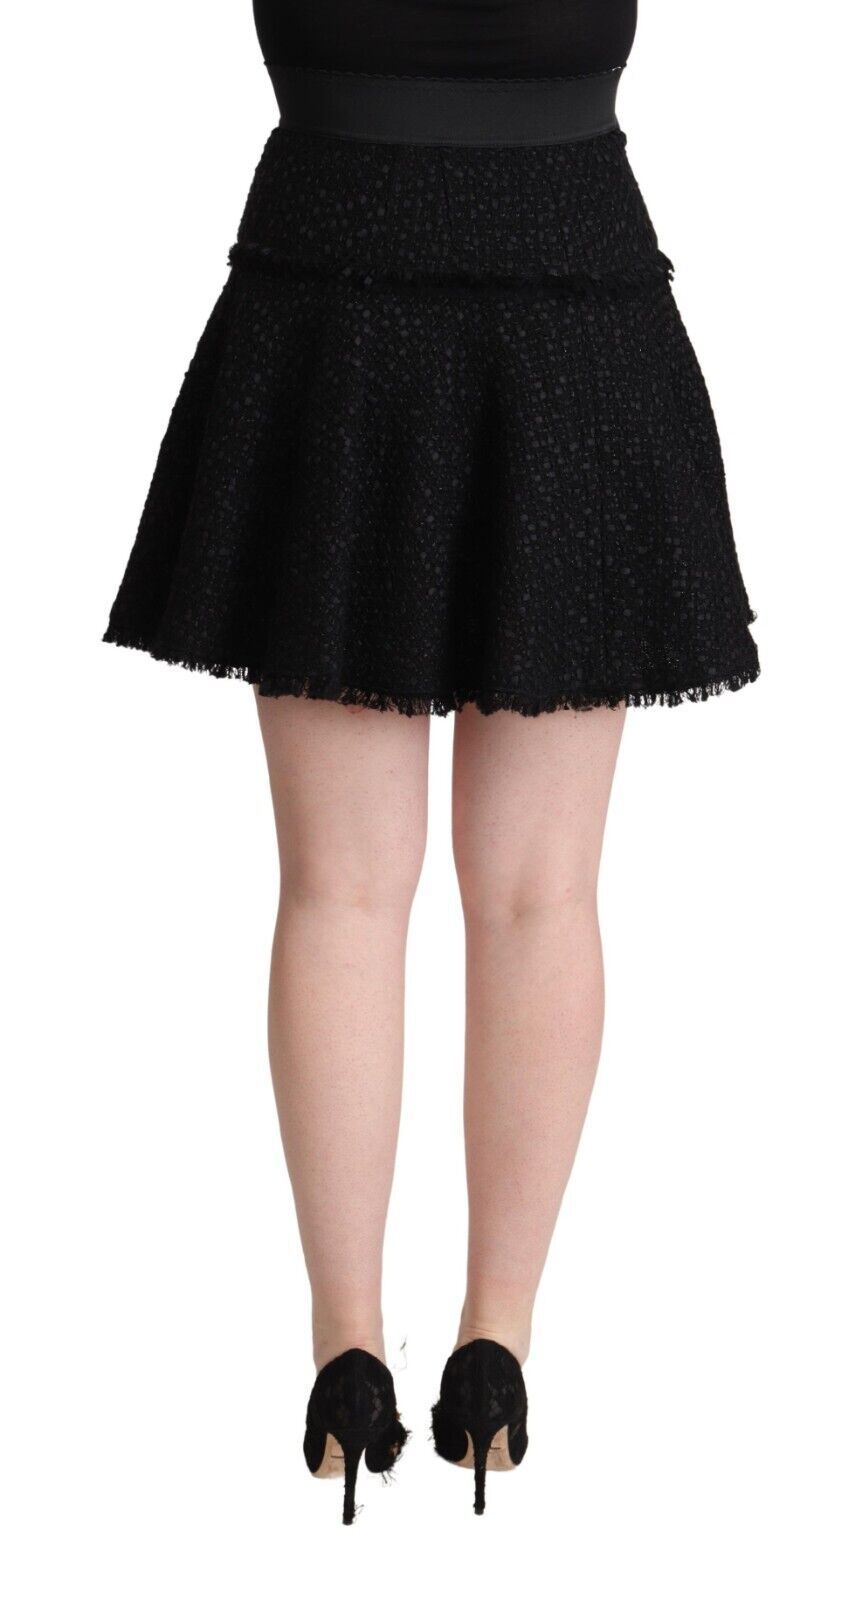 Black Knitted Nylon High Waist Mini A-line Skirt